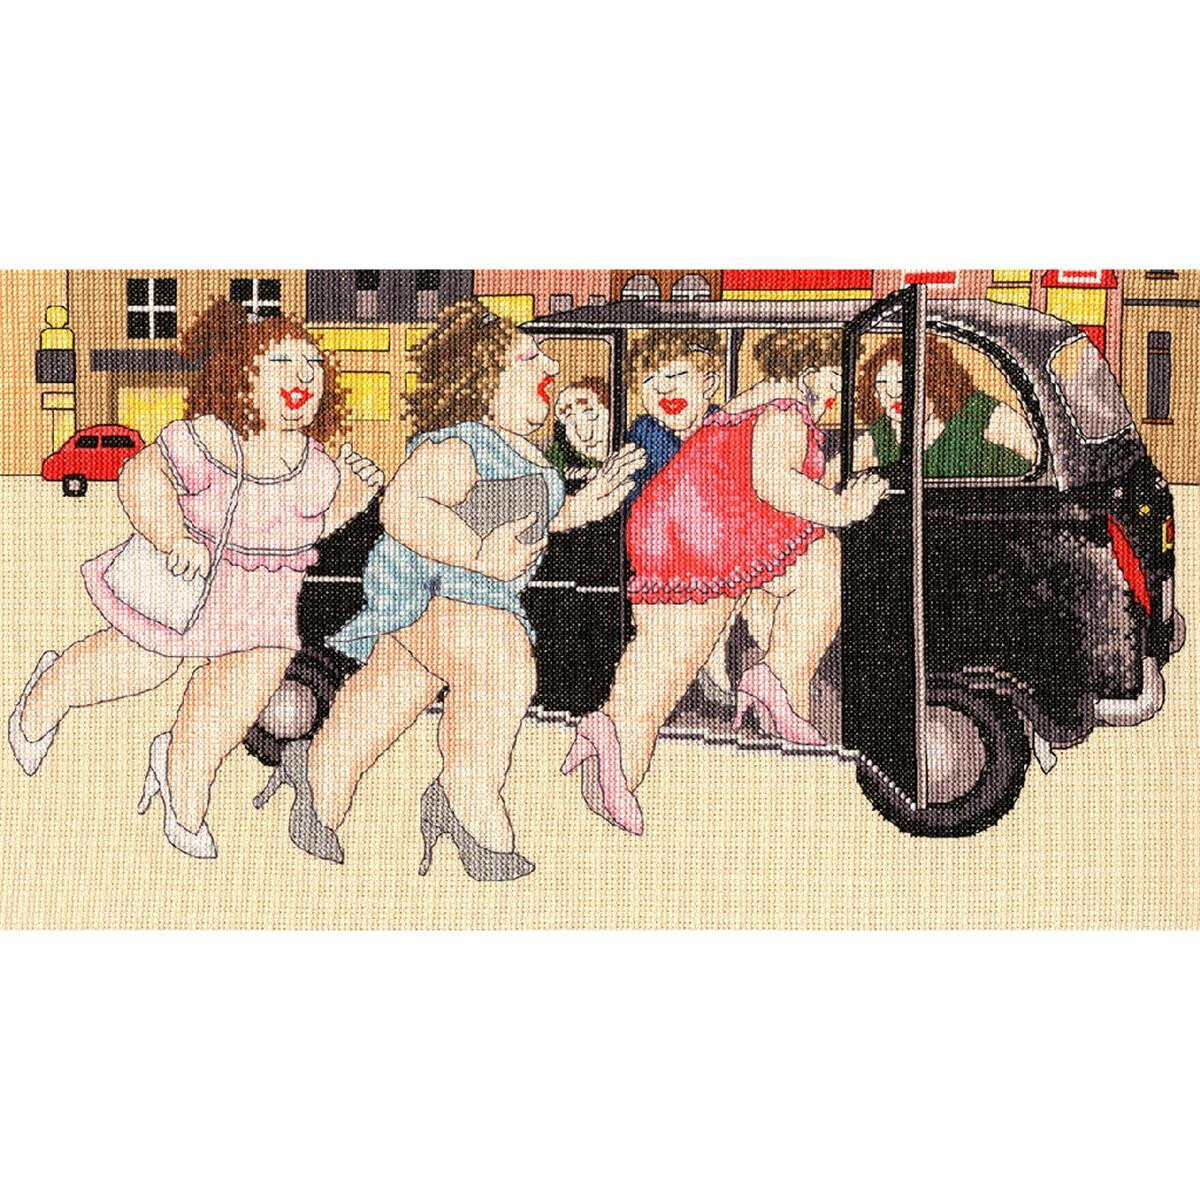 Une illustration bizarre montre cinq femmes aux courbes...